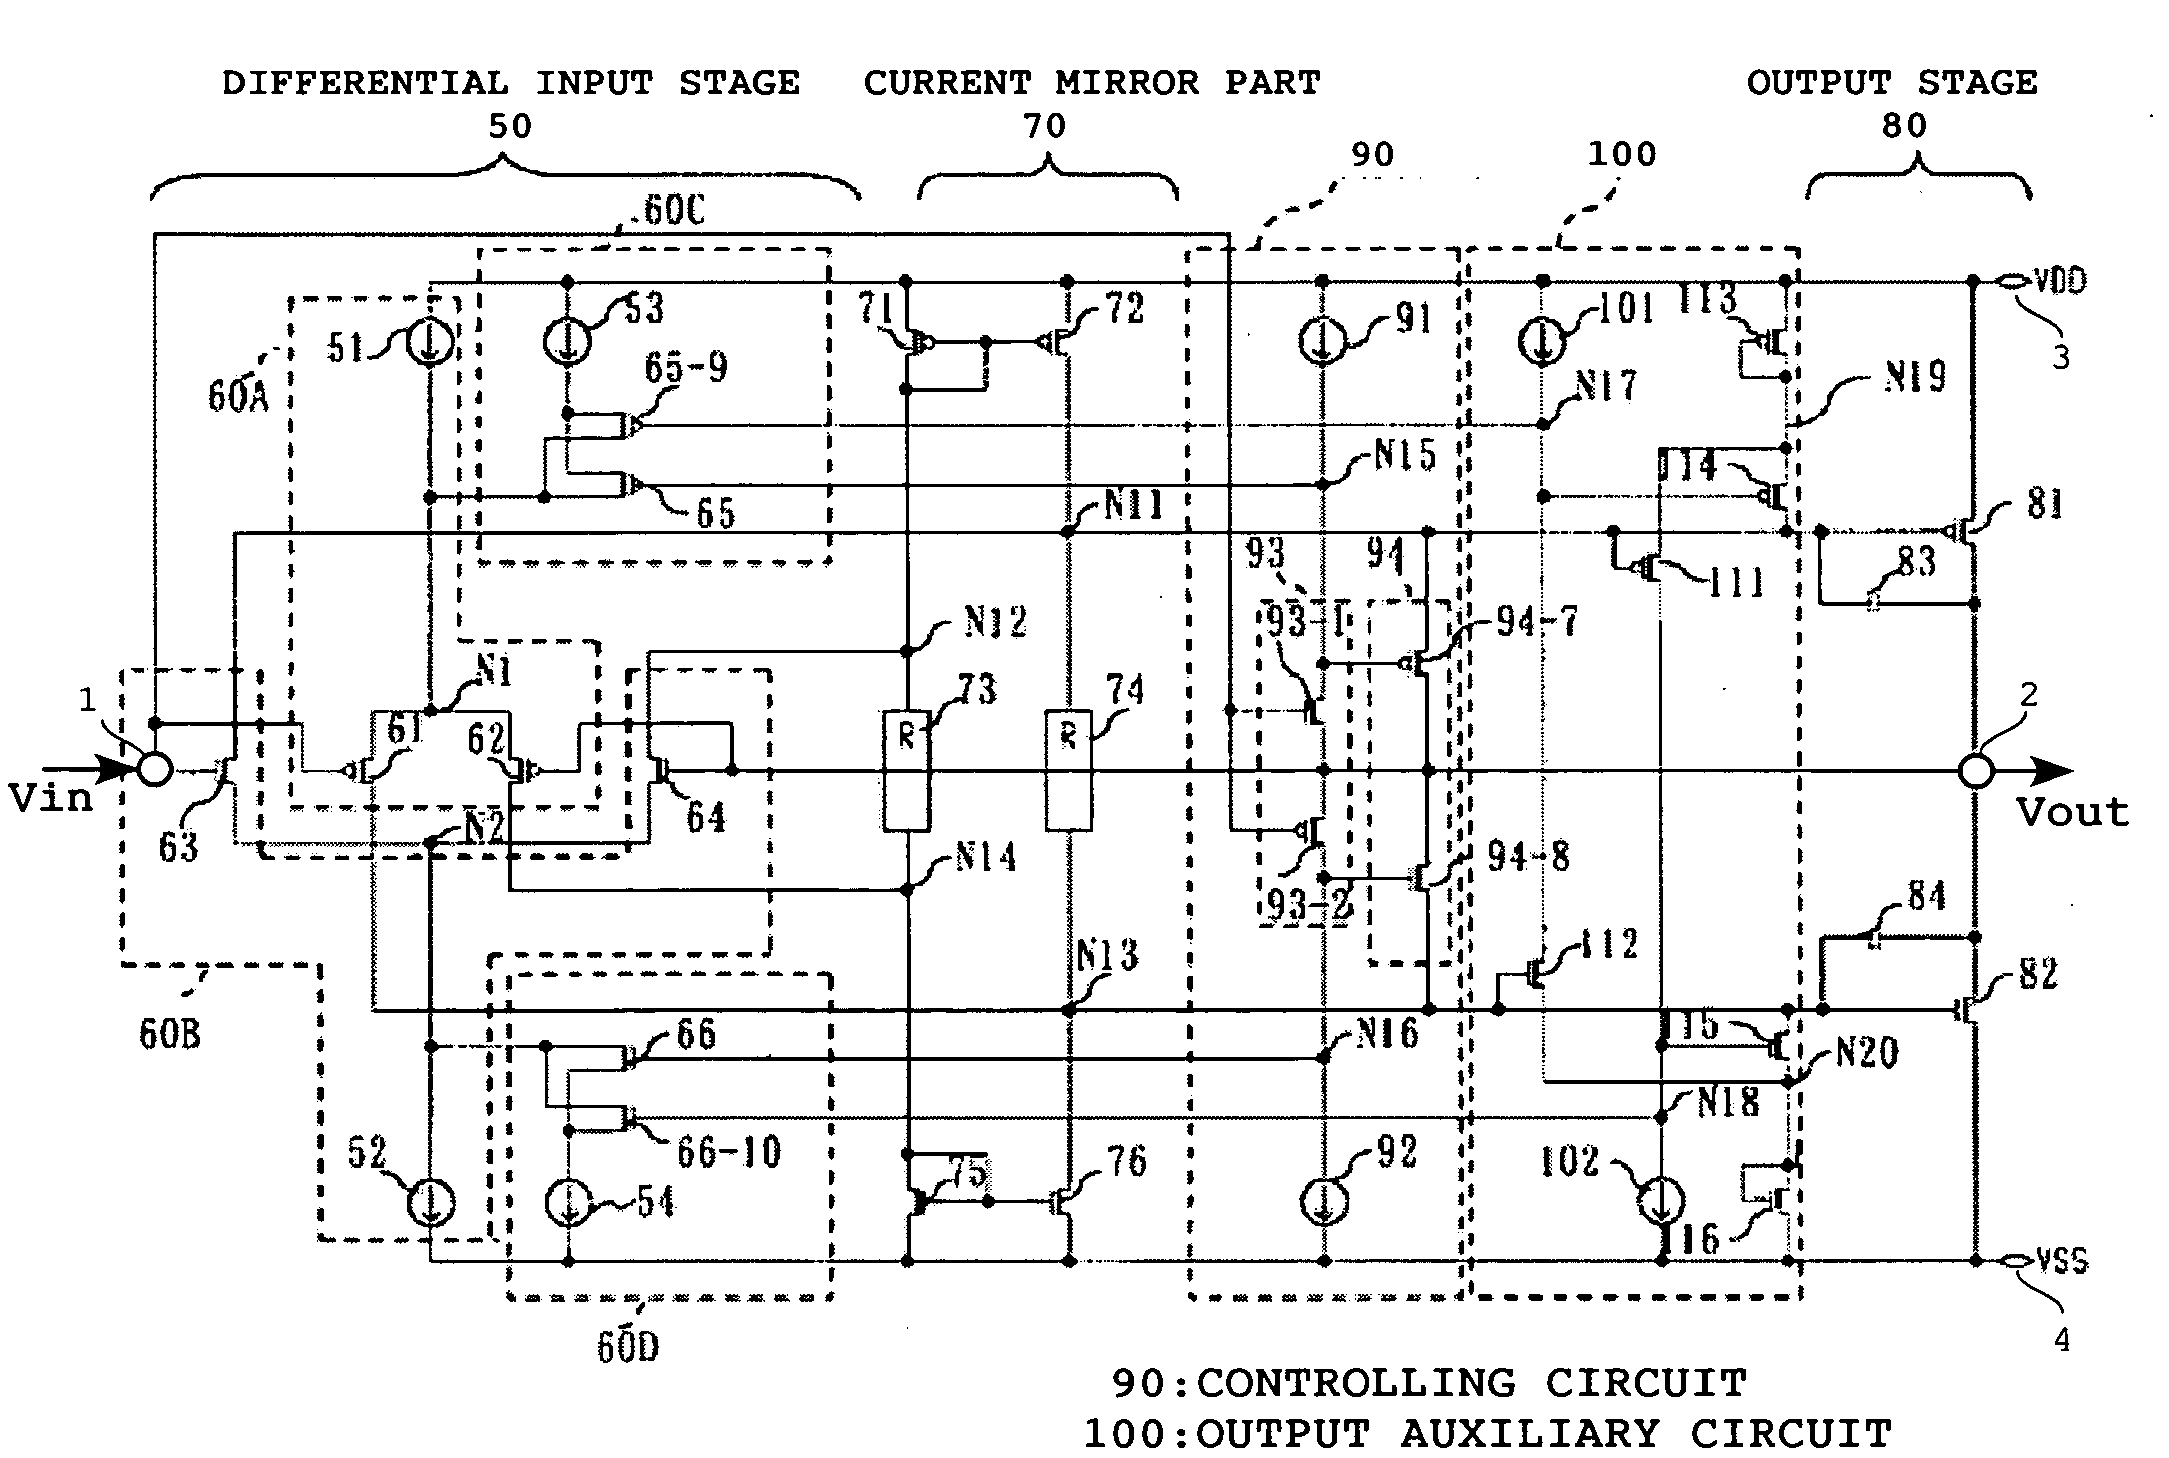 Driver circuit usable for display panel